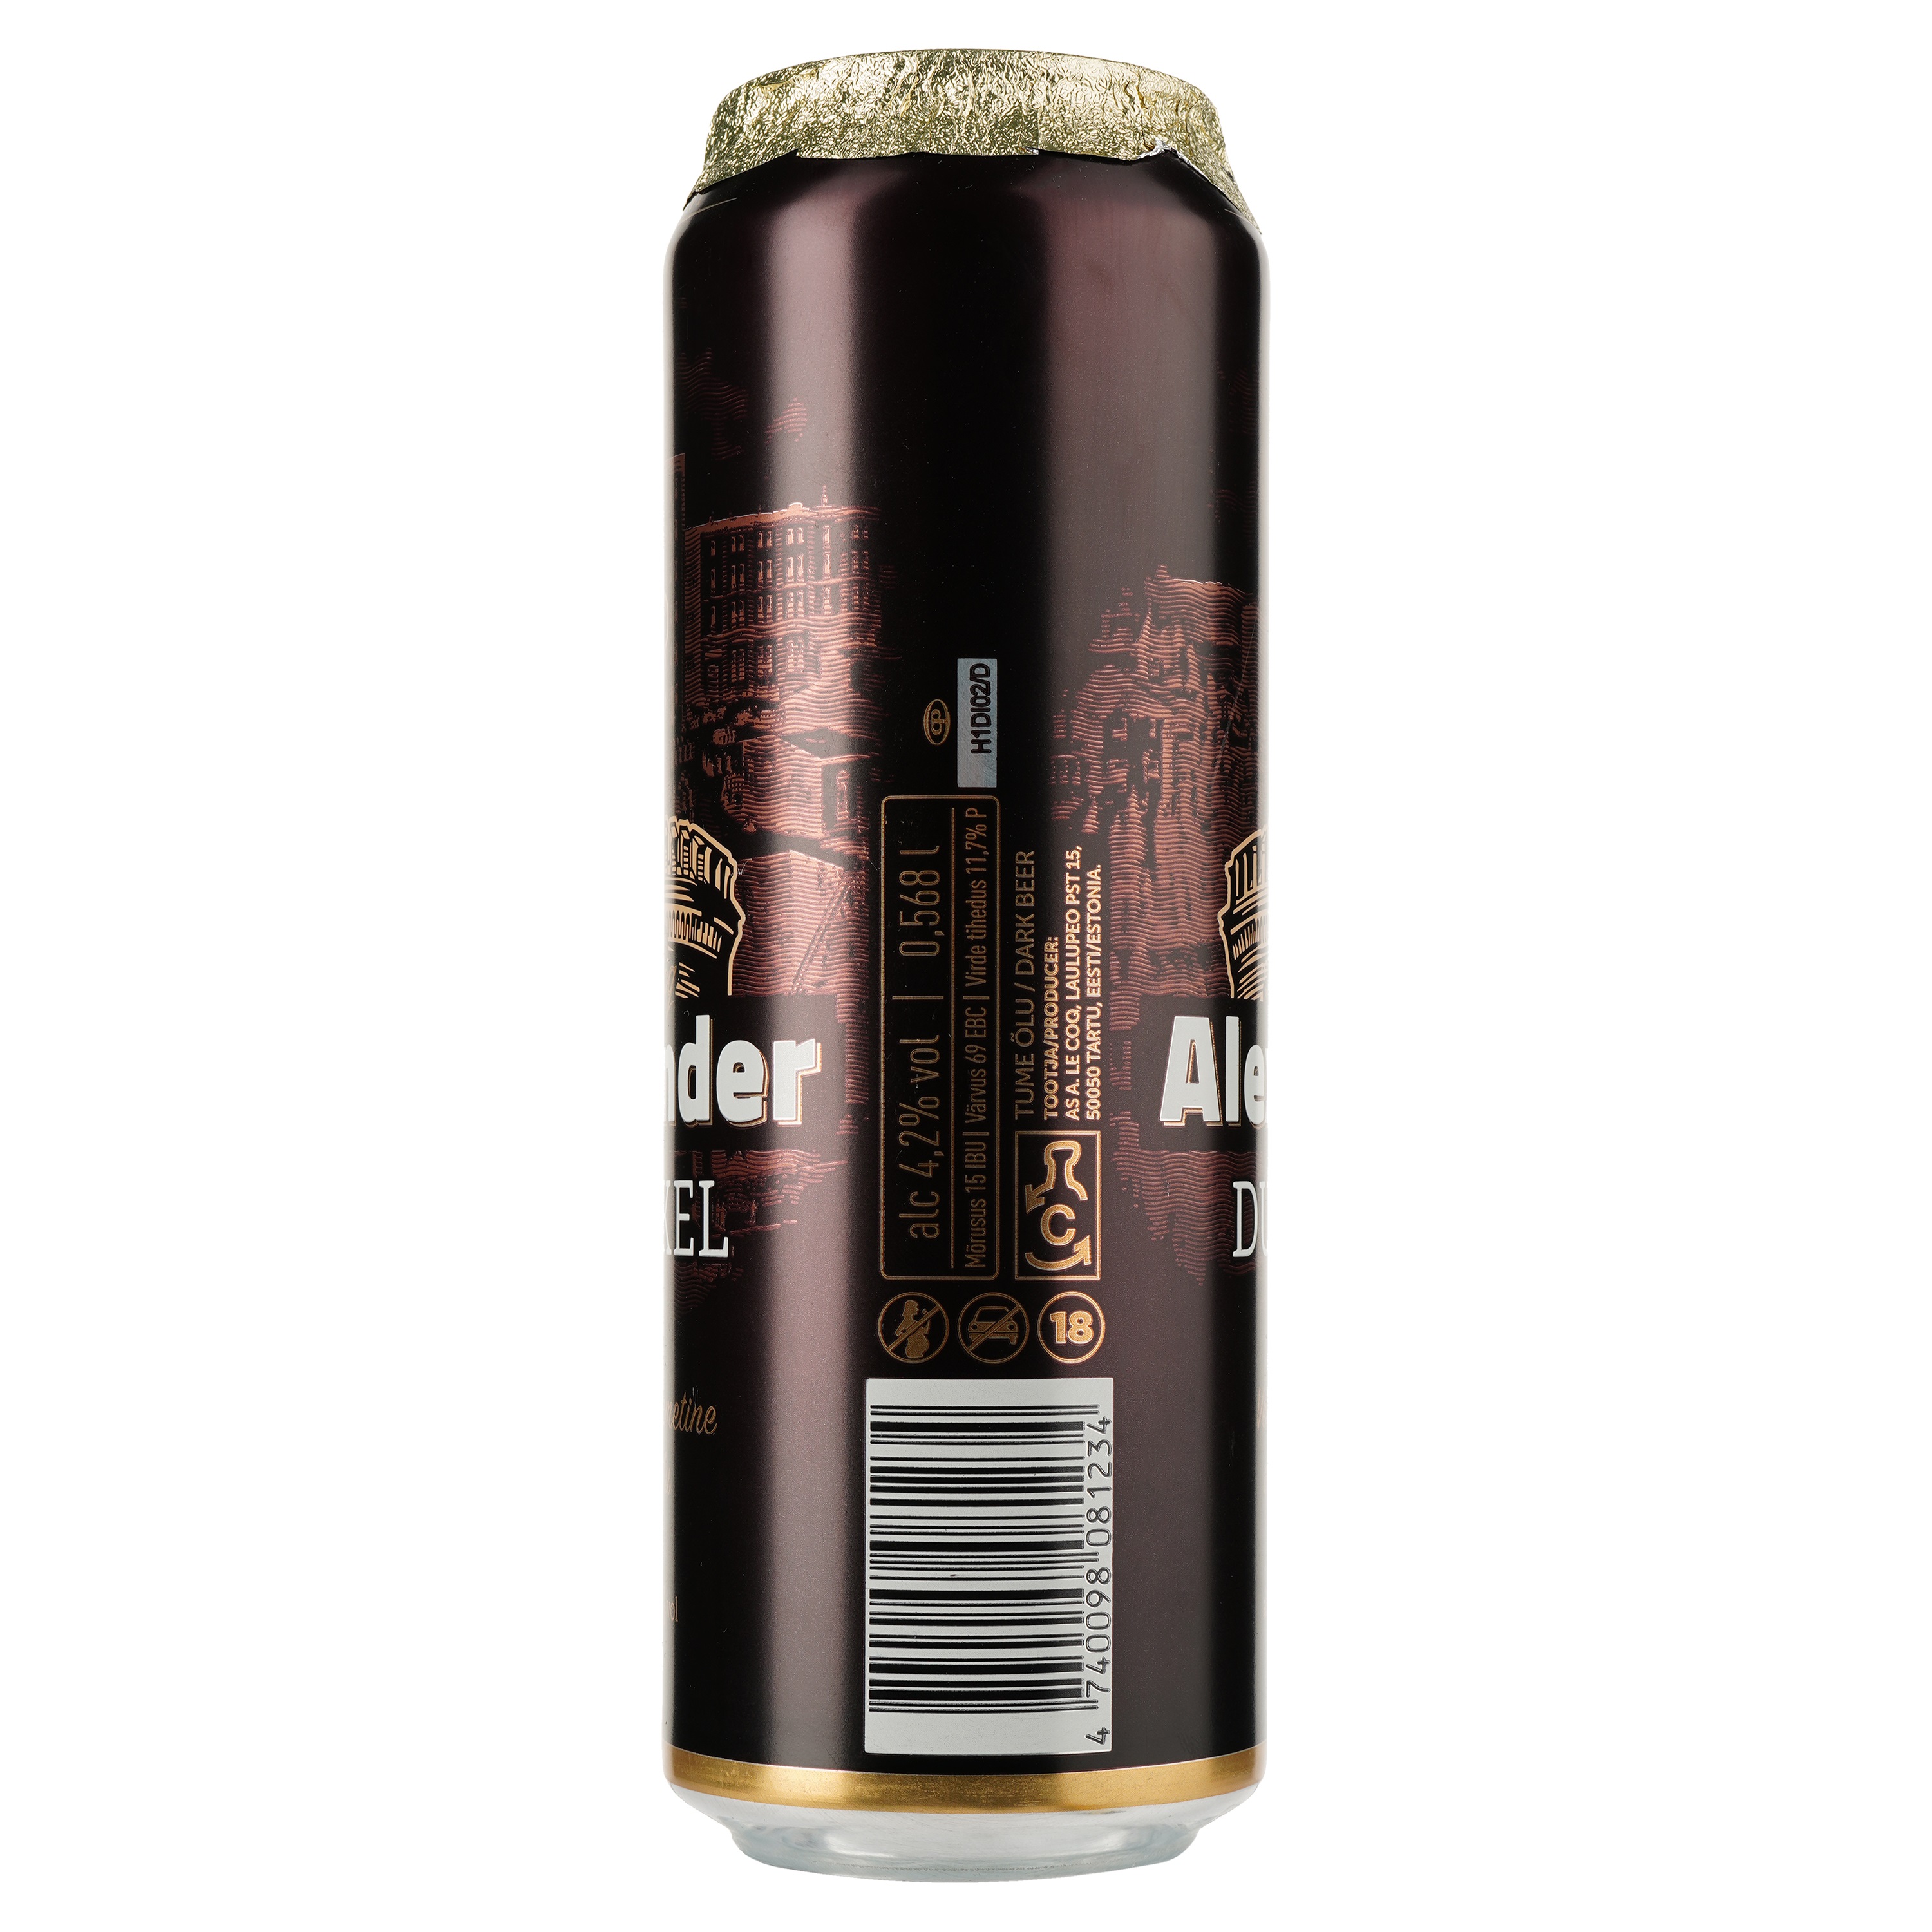 Пиво A. Le Coq Alexander Dunkel, темное, фильтрованное, 4,2%, ж/б, 0,568 л - фото 2